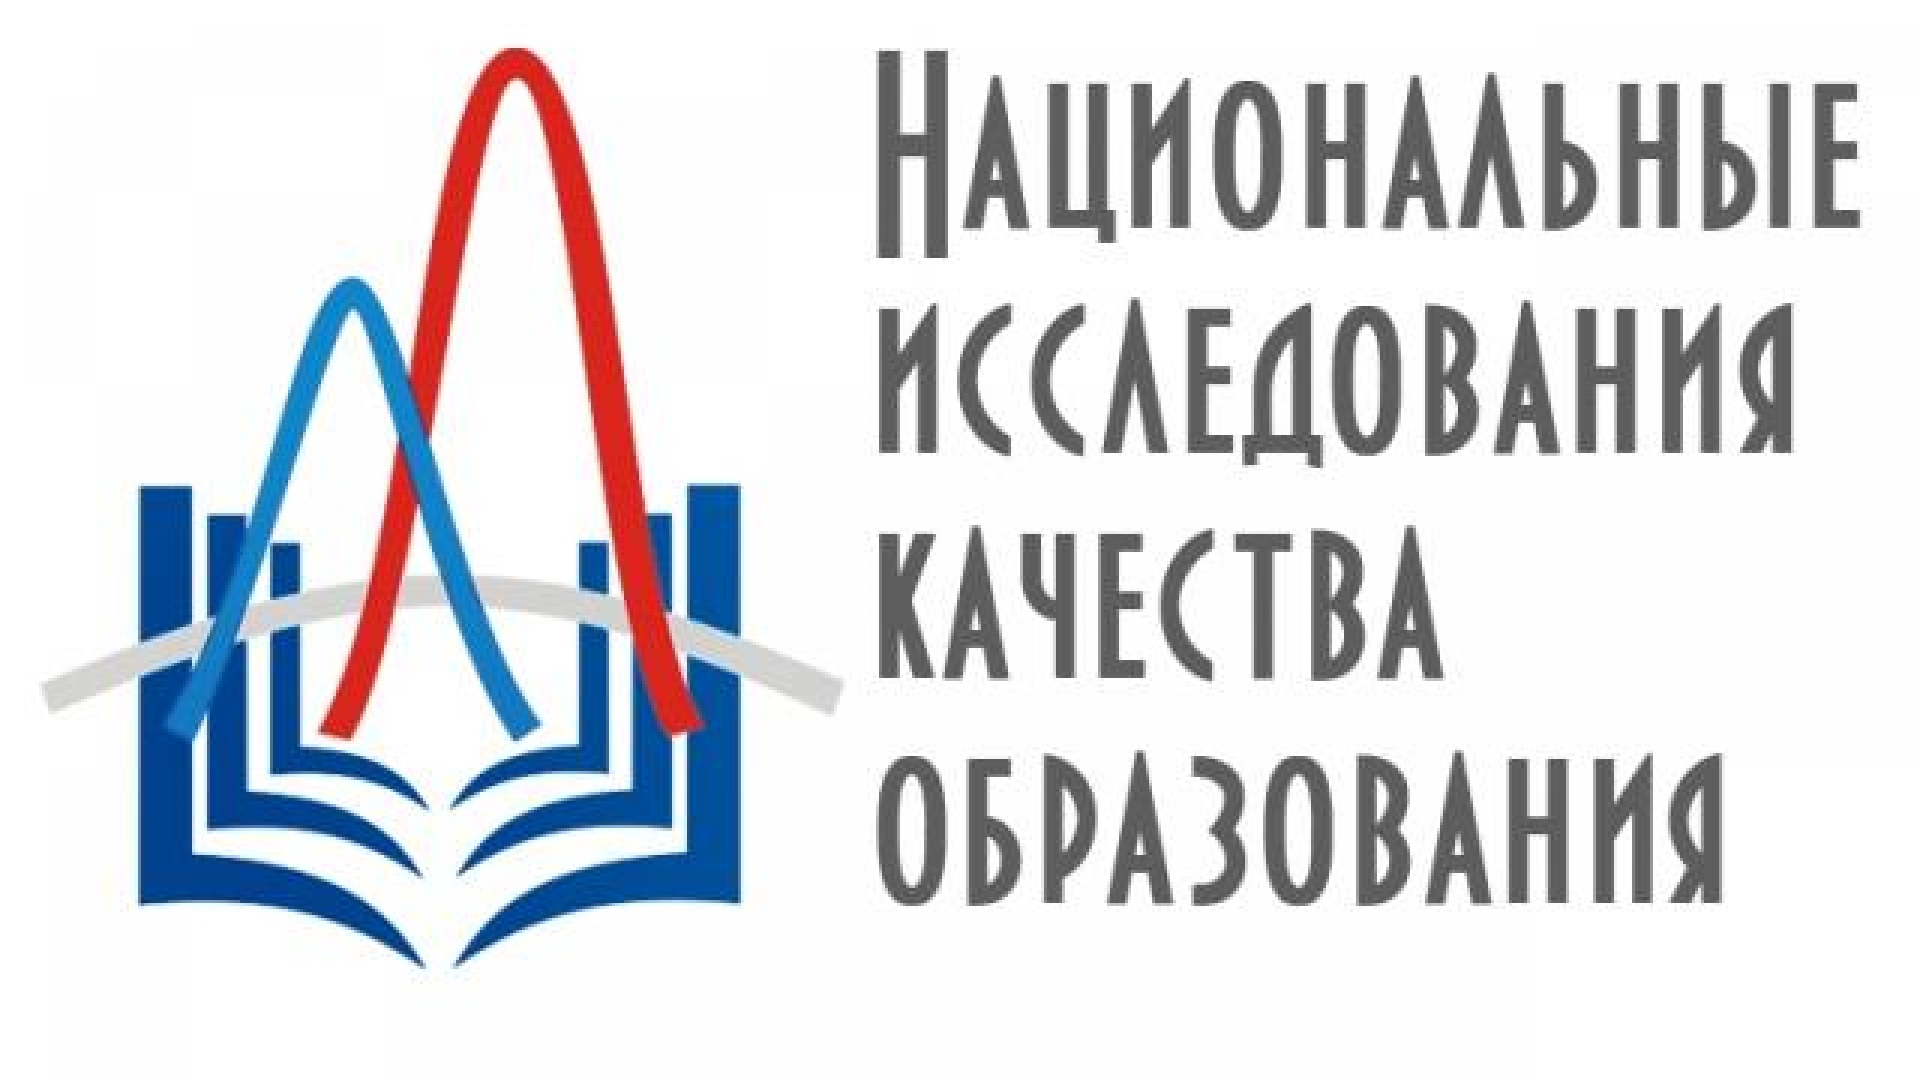 Челябинская область примет участие в Национальном исследовании качества образования по физкультуре